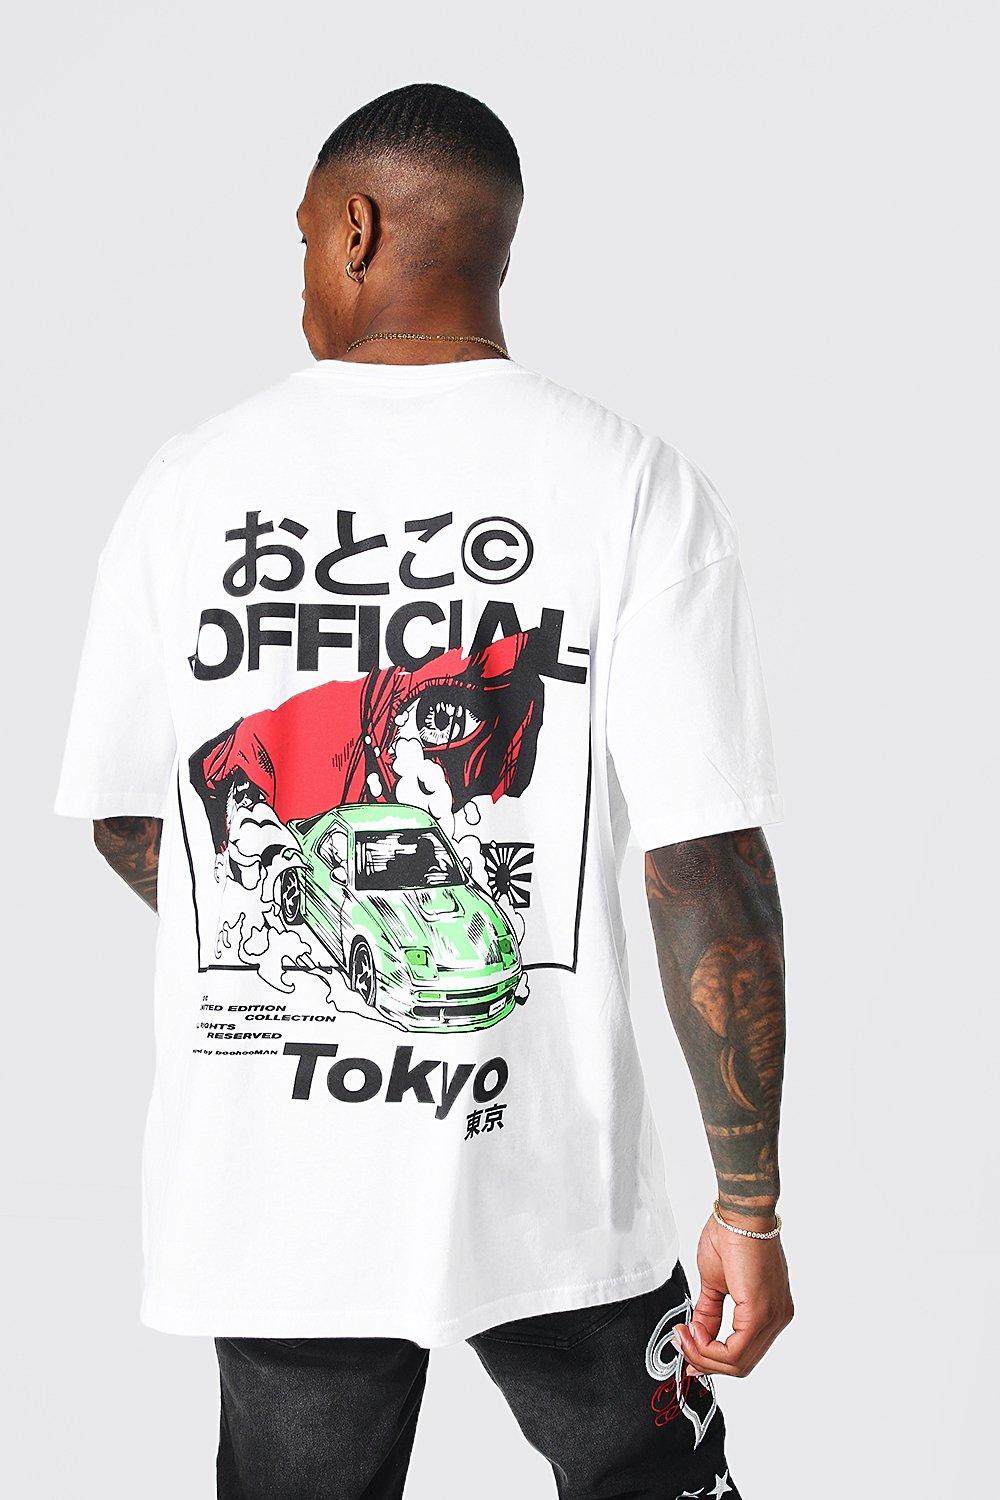 tokyo-shirts-miyama-atami-jp